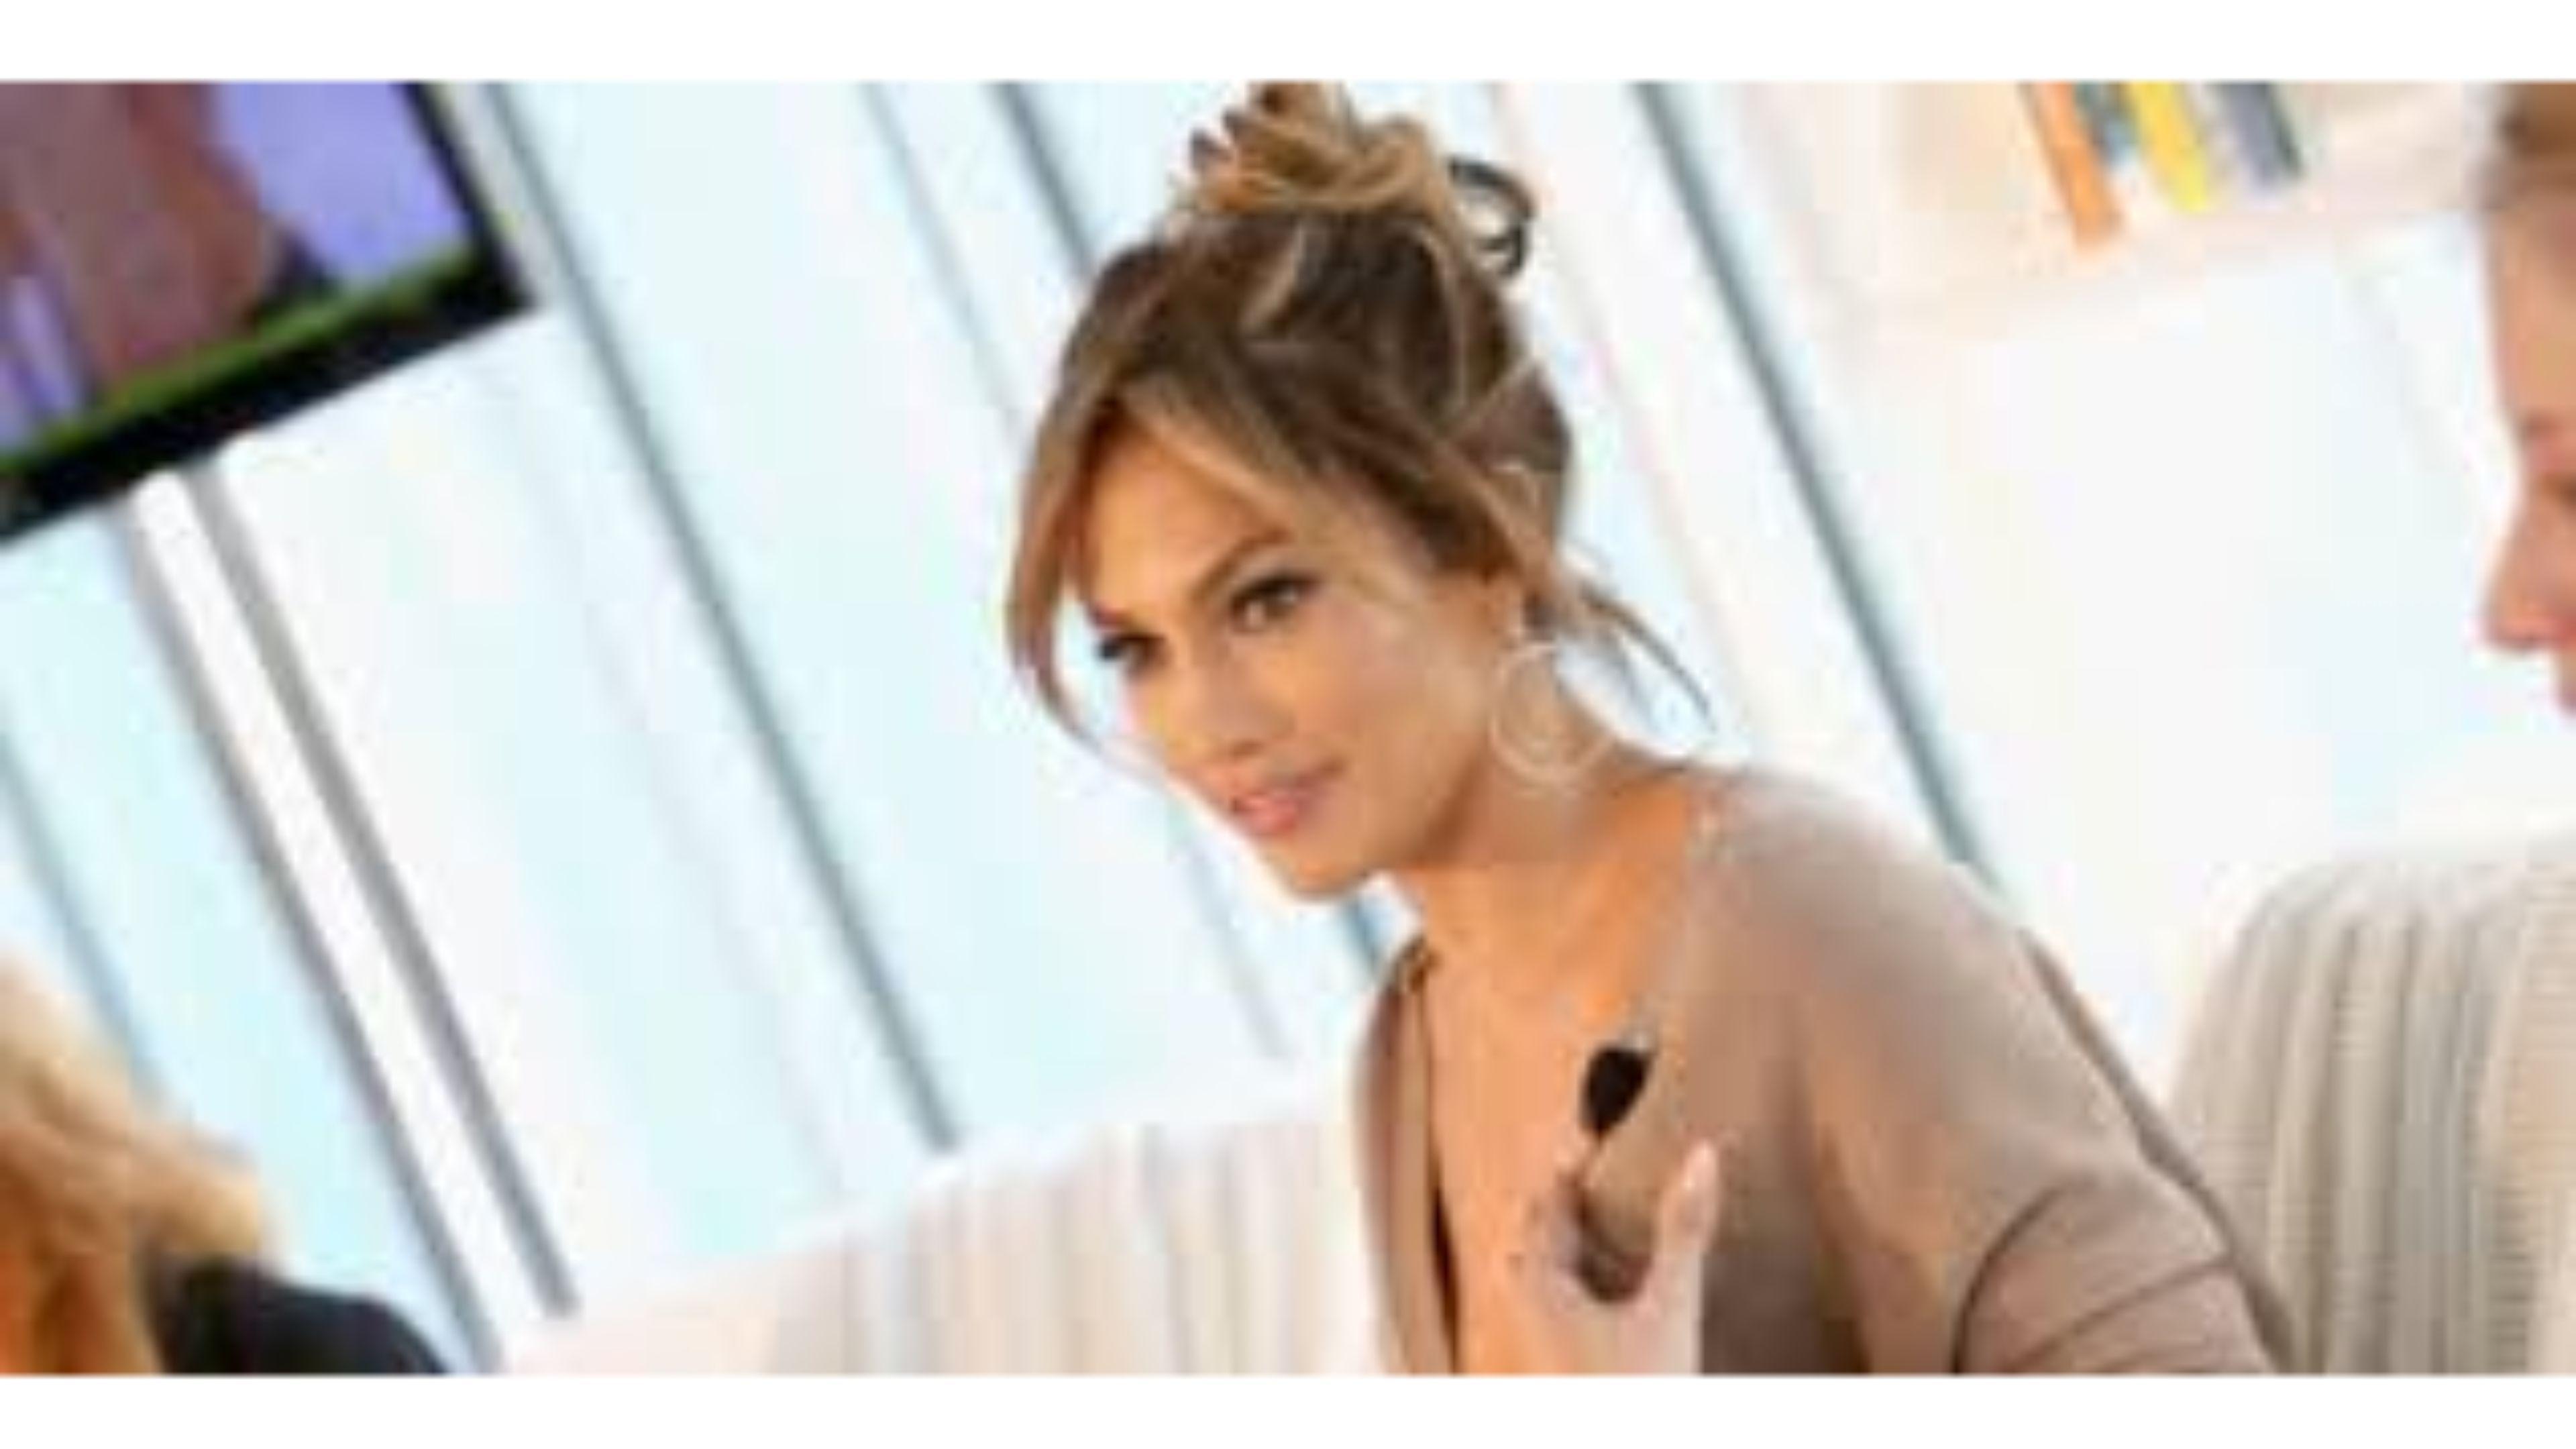 Beautiful 2016 Jennifer Lopez 4K Wallpaper. Free 4K Wallpaper